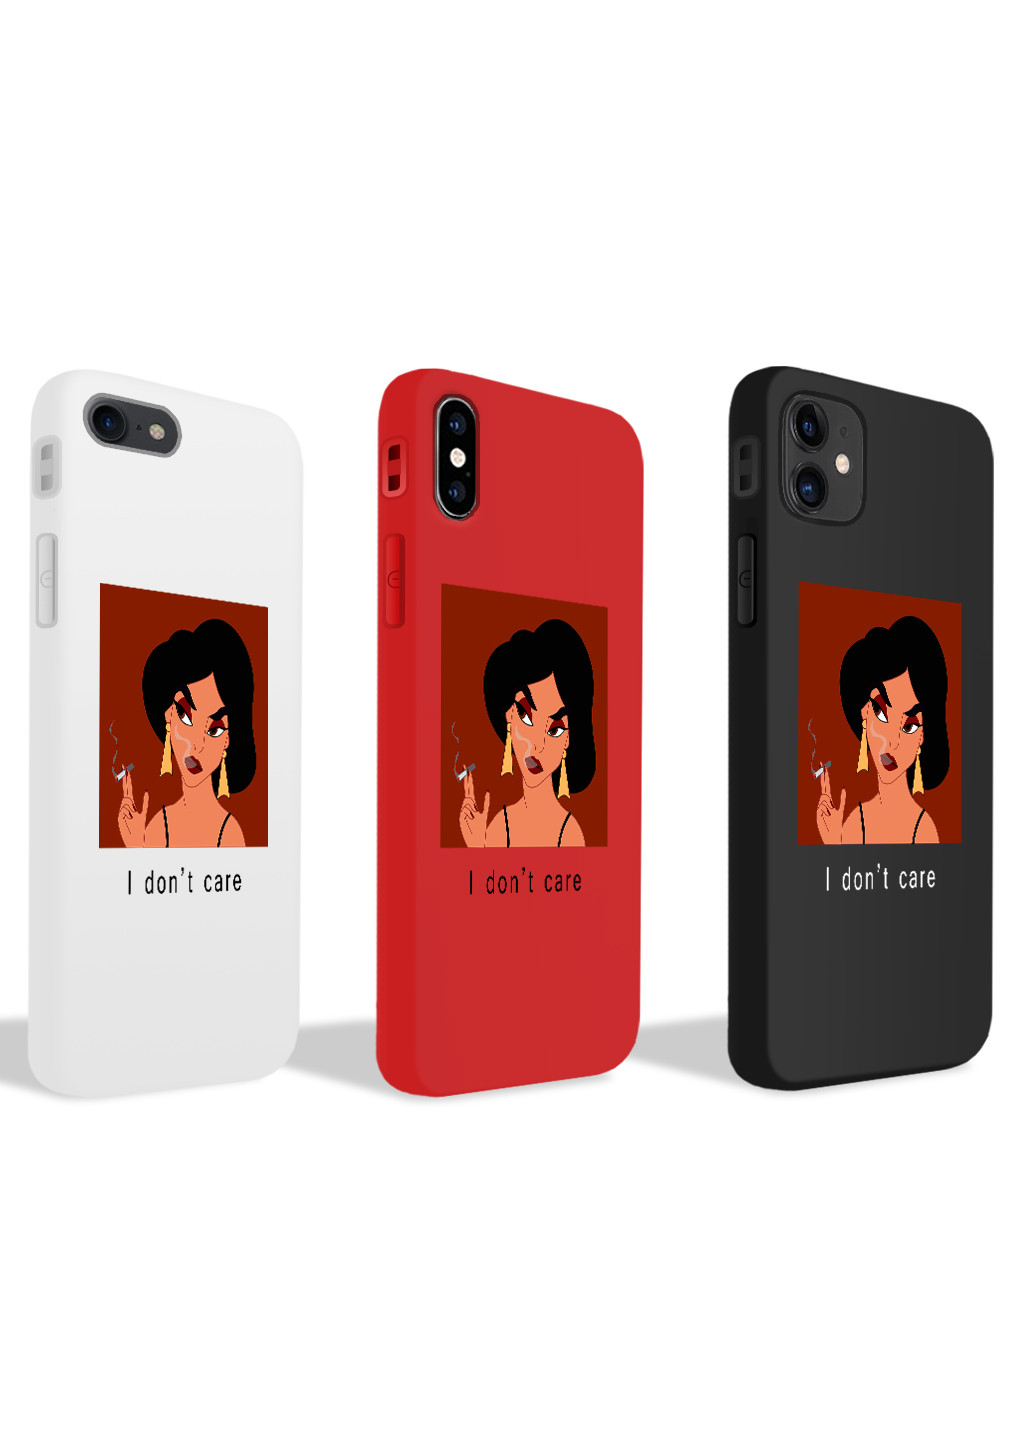 Чехол силиконовый Apple Iphone 11 Pro Max Жасмин Аладдин Дисней (Princess Jasmine Disney) (9232-1430) MobiPrint (219777614)